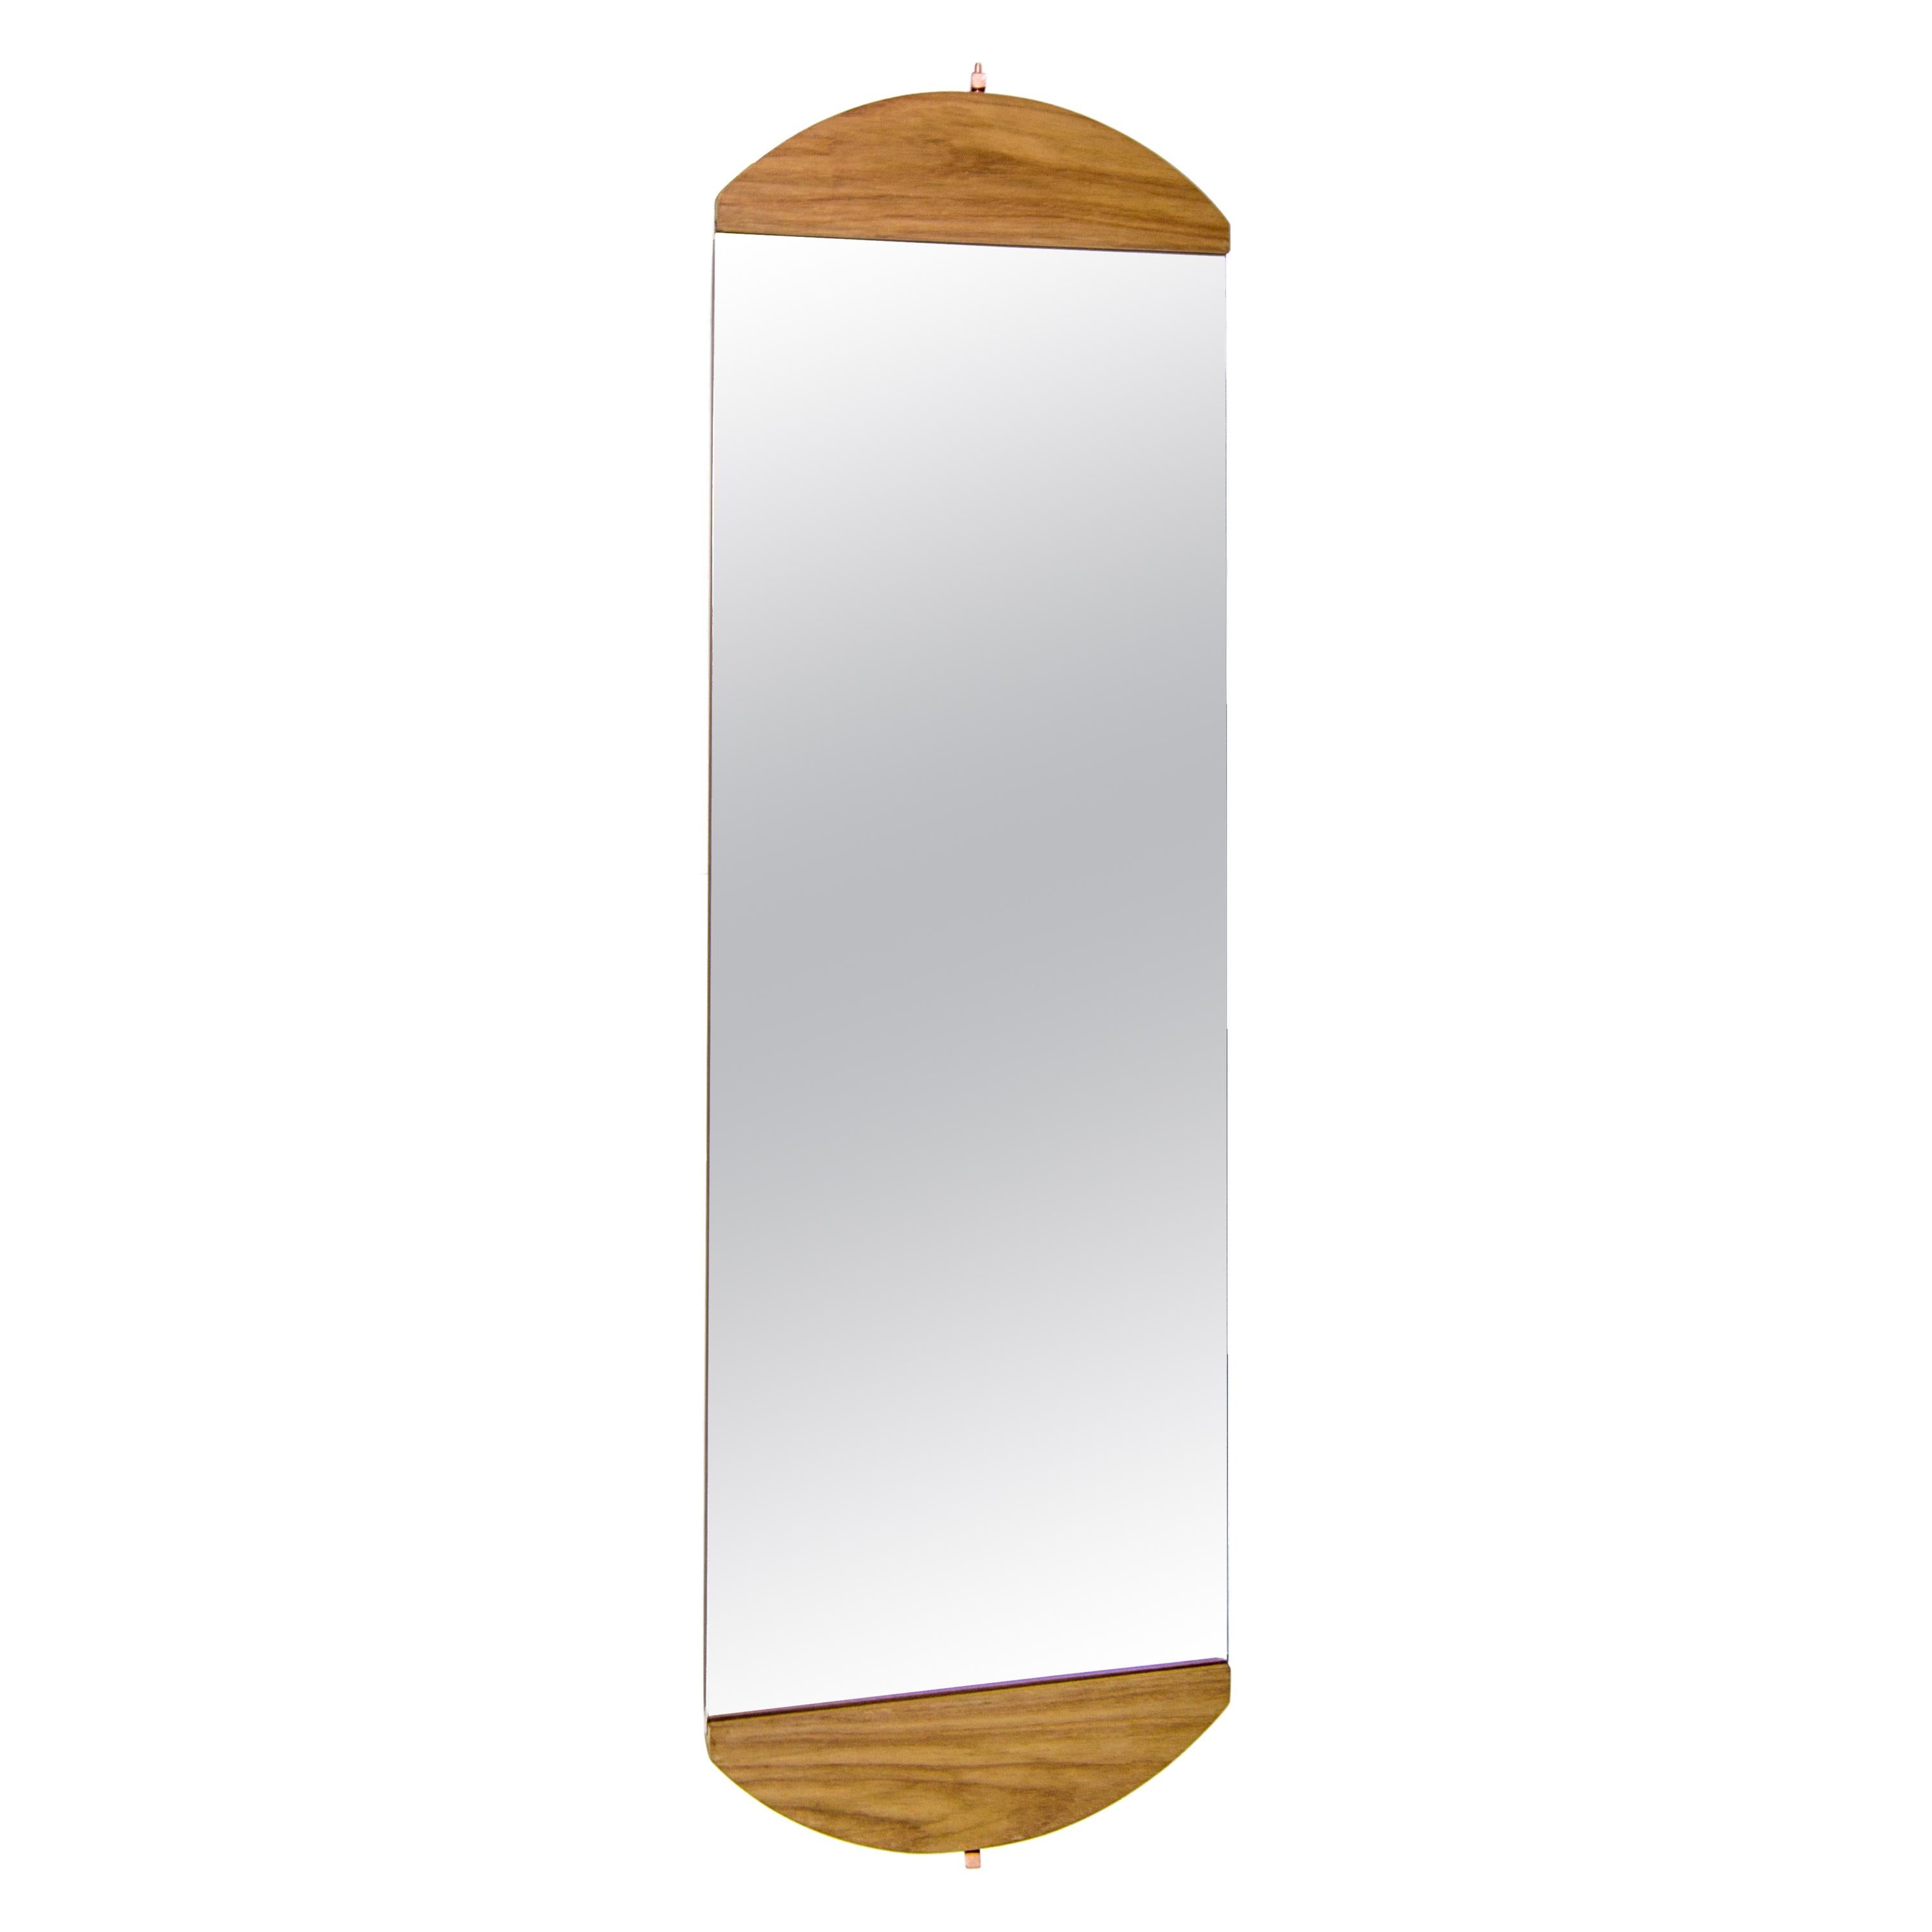 Gira Full Length Rotating Mirror in Brazilian Hardwood by Knót Artesanal For Sale